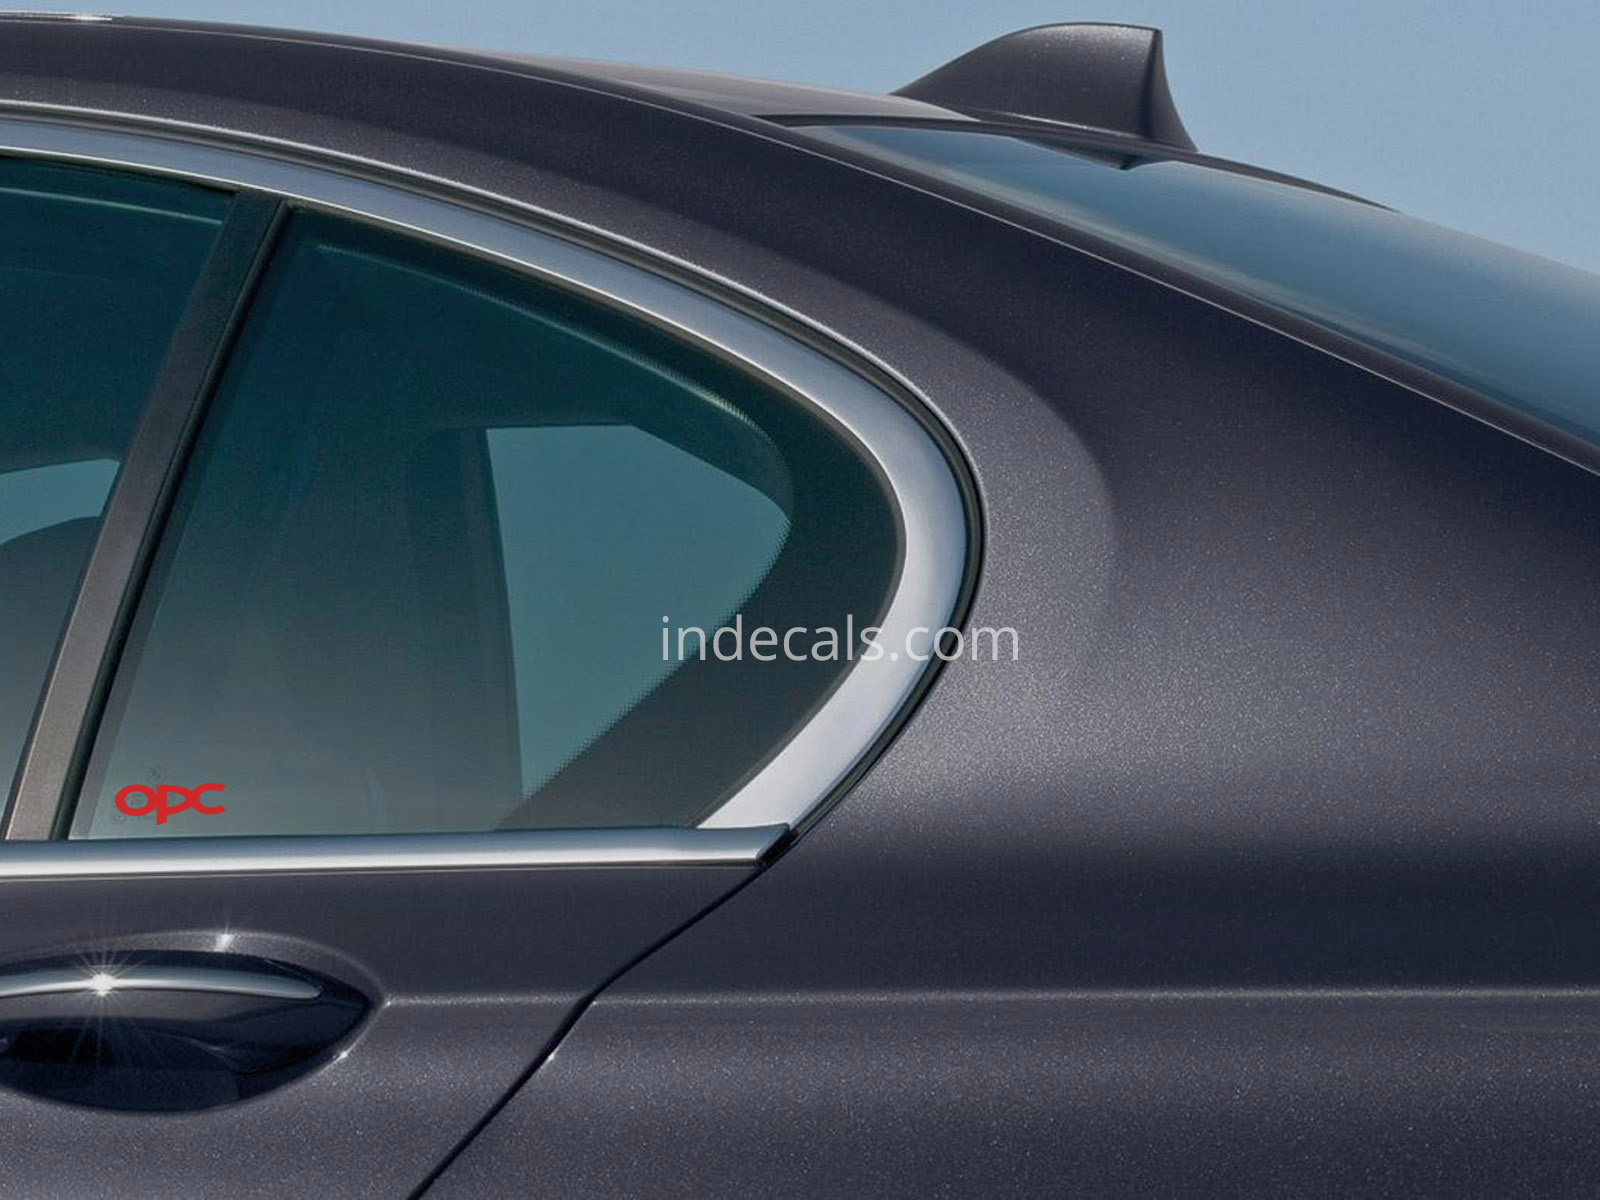 3 x Opel OPC Stickers for Rear Window - Red